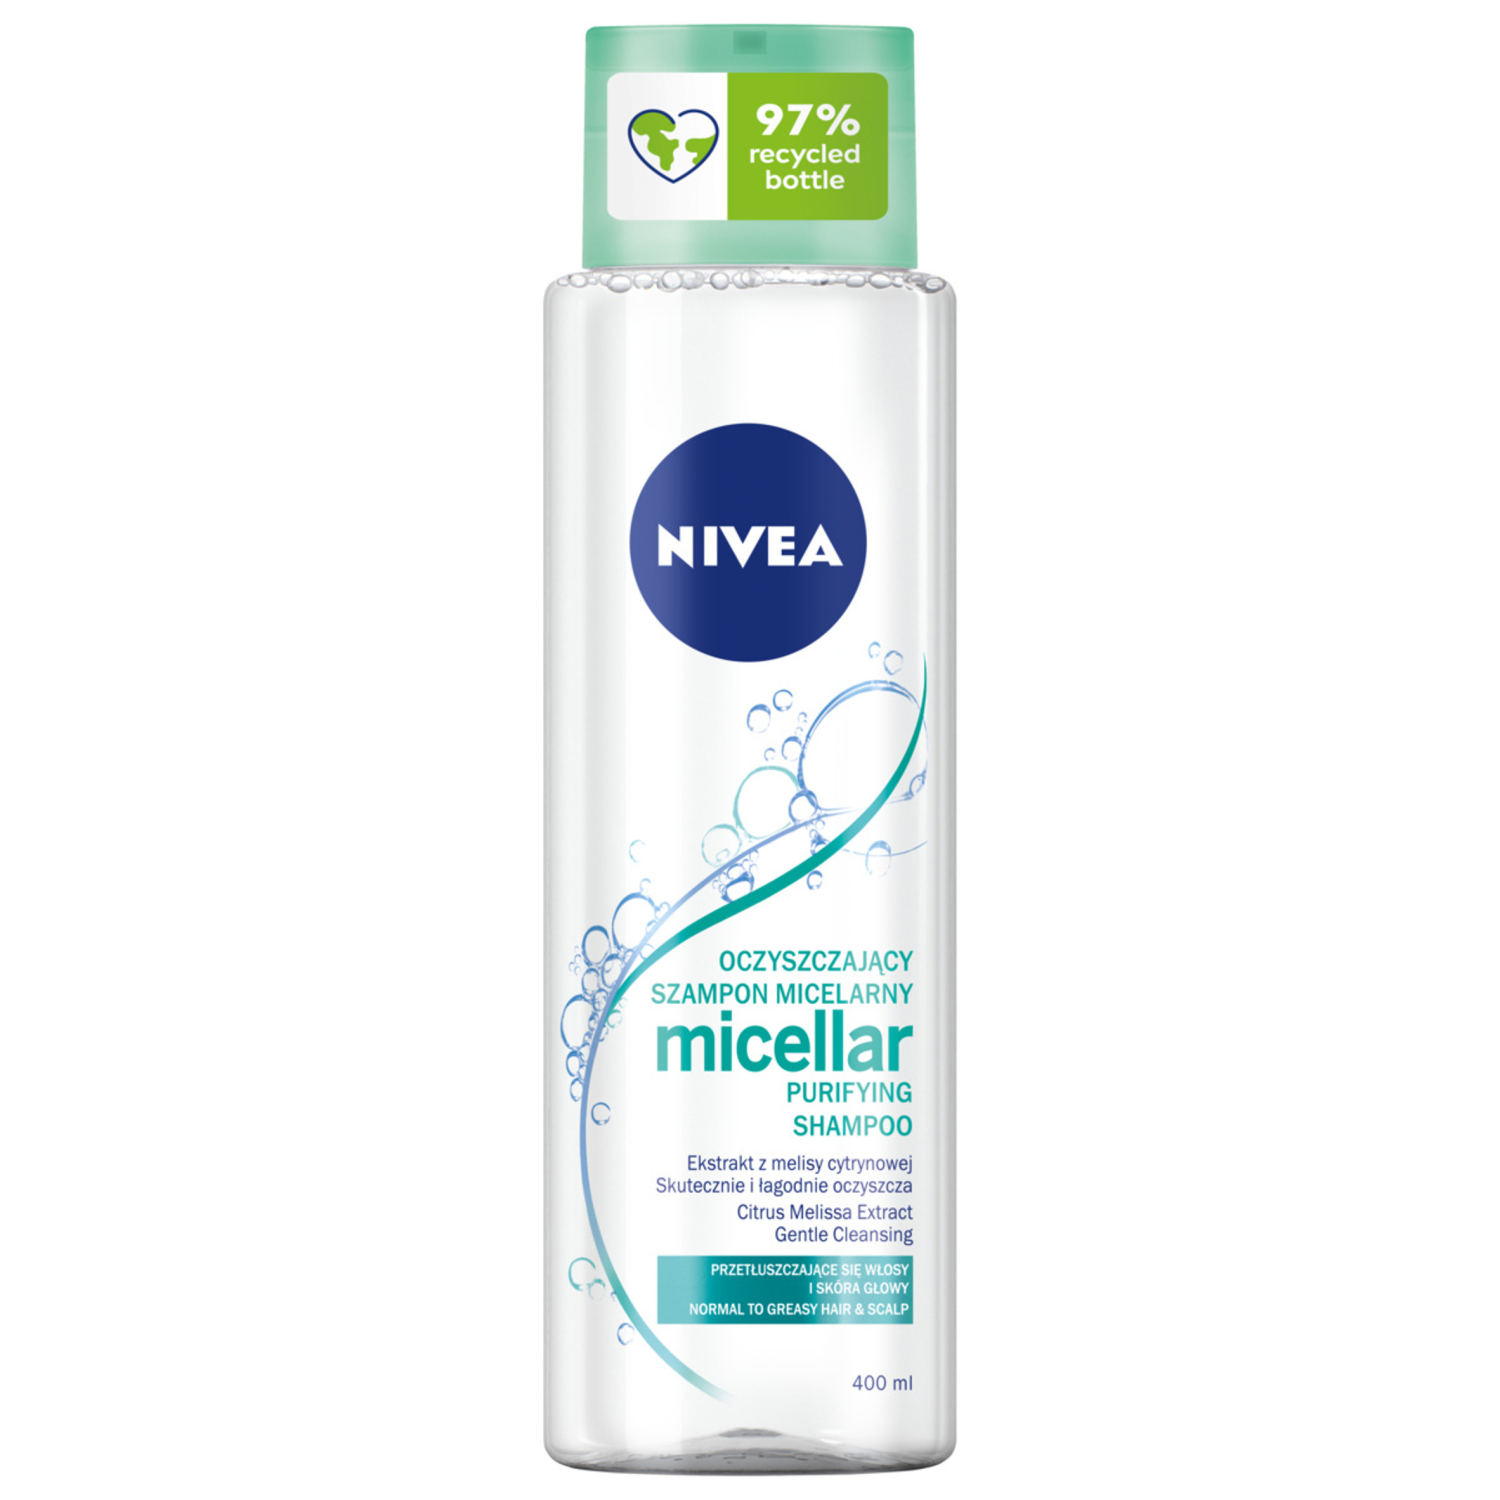 nivea głęboko oczyszczający szampon micelarny z ekstraktem z melisy cytrynowej